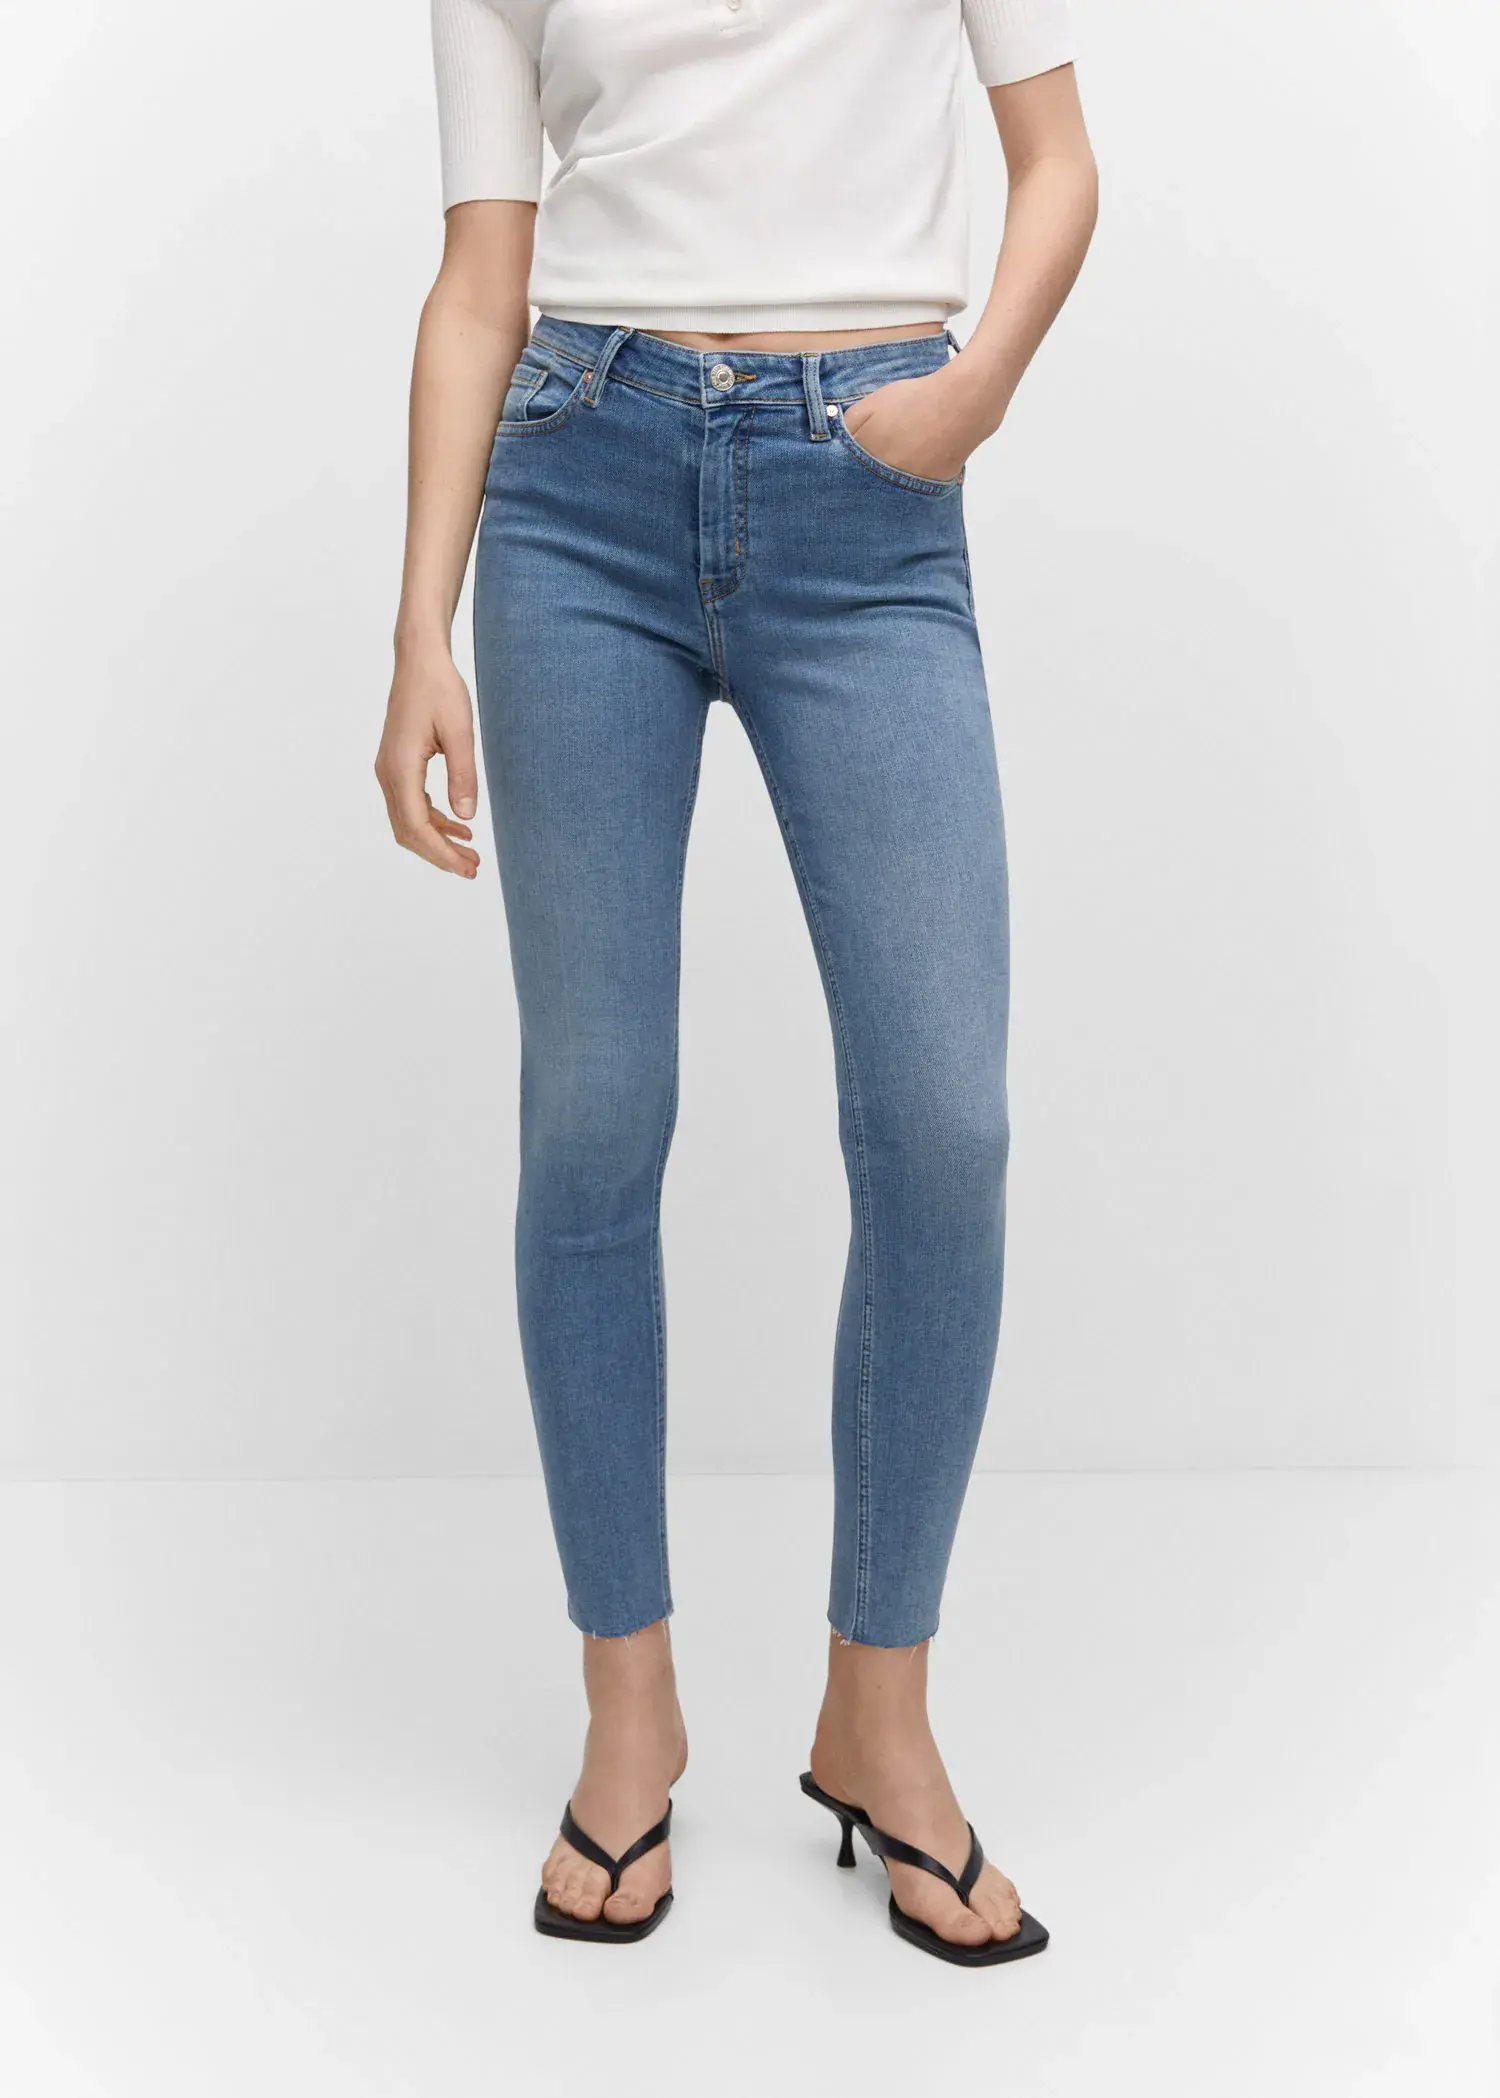 Mango Skinny-Jeans in Cropped-Länge. 1